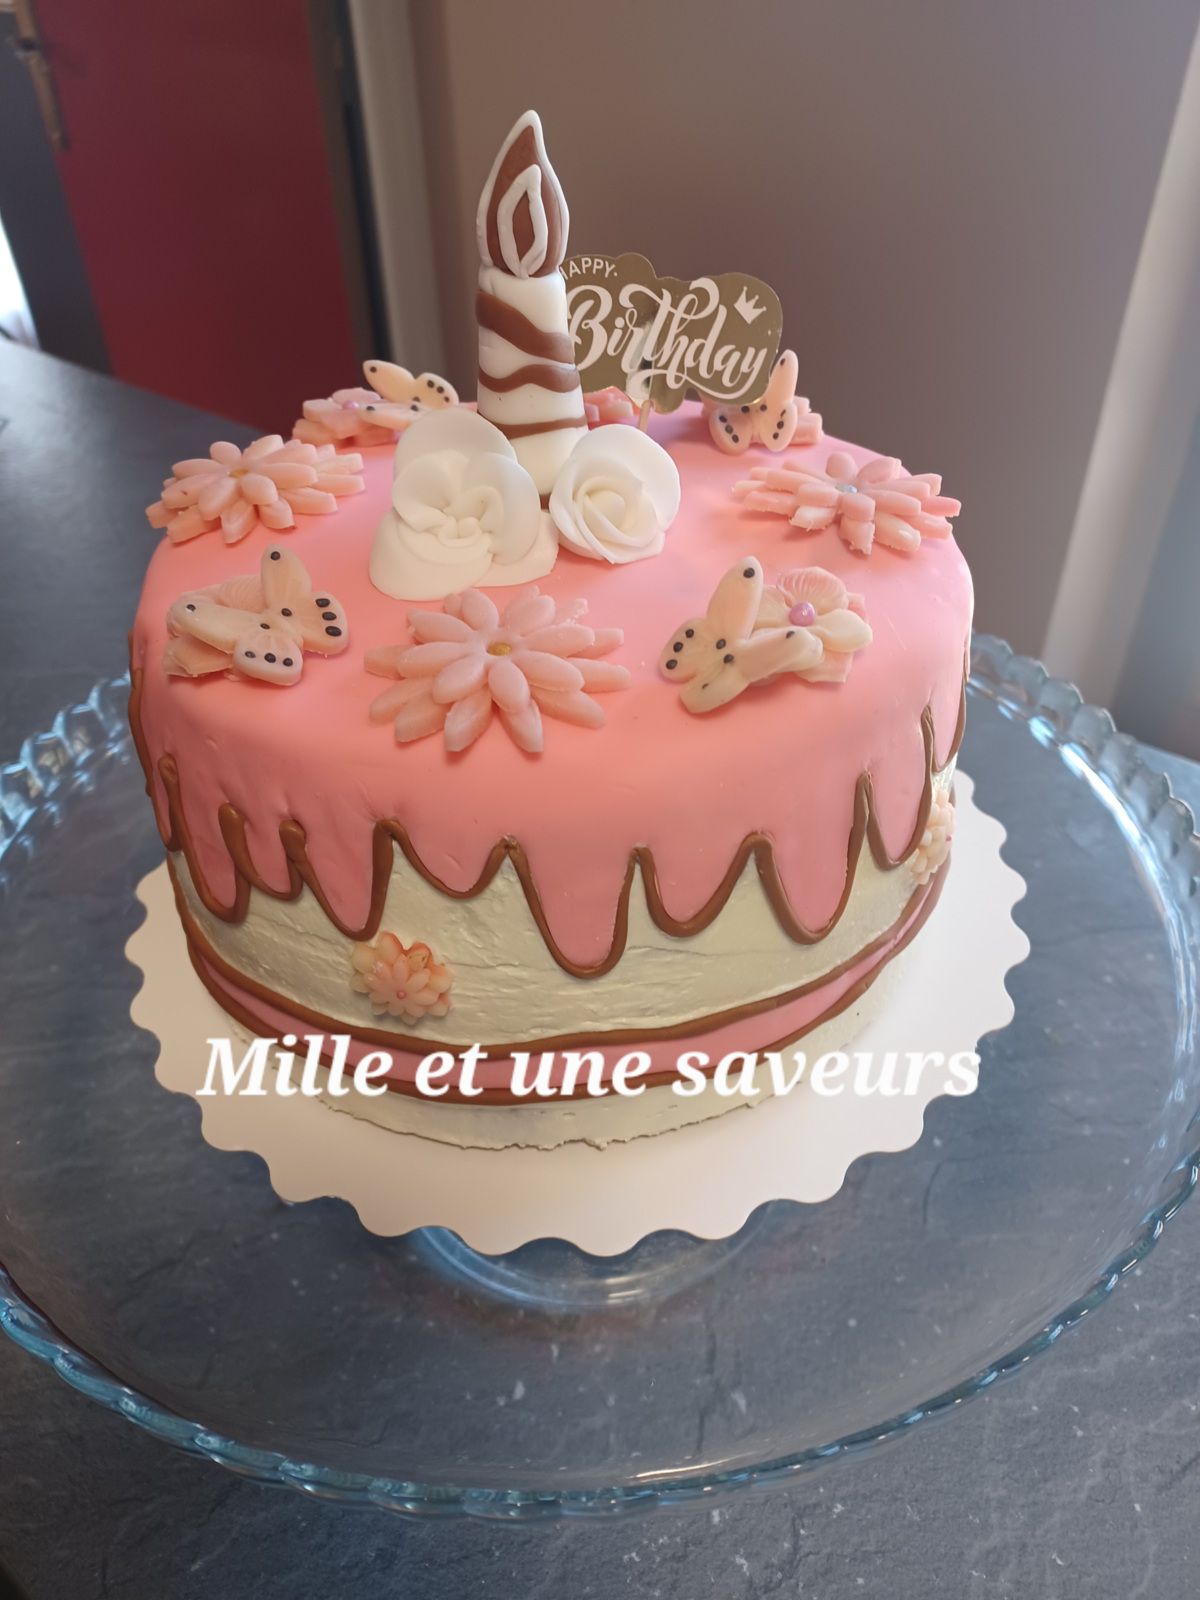 Cartoon cake, ganache inspiration fraise, crème pâtissière cassis